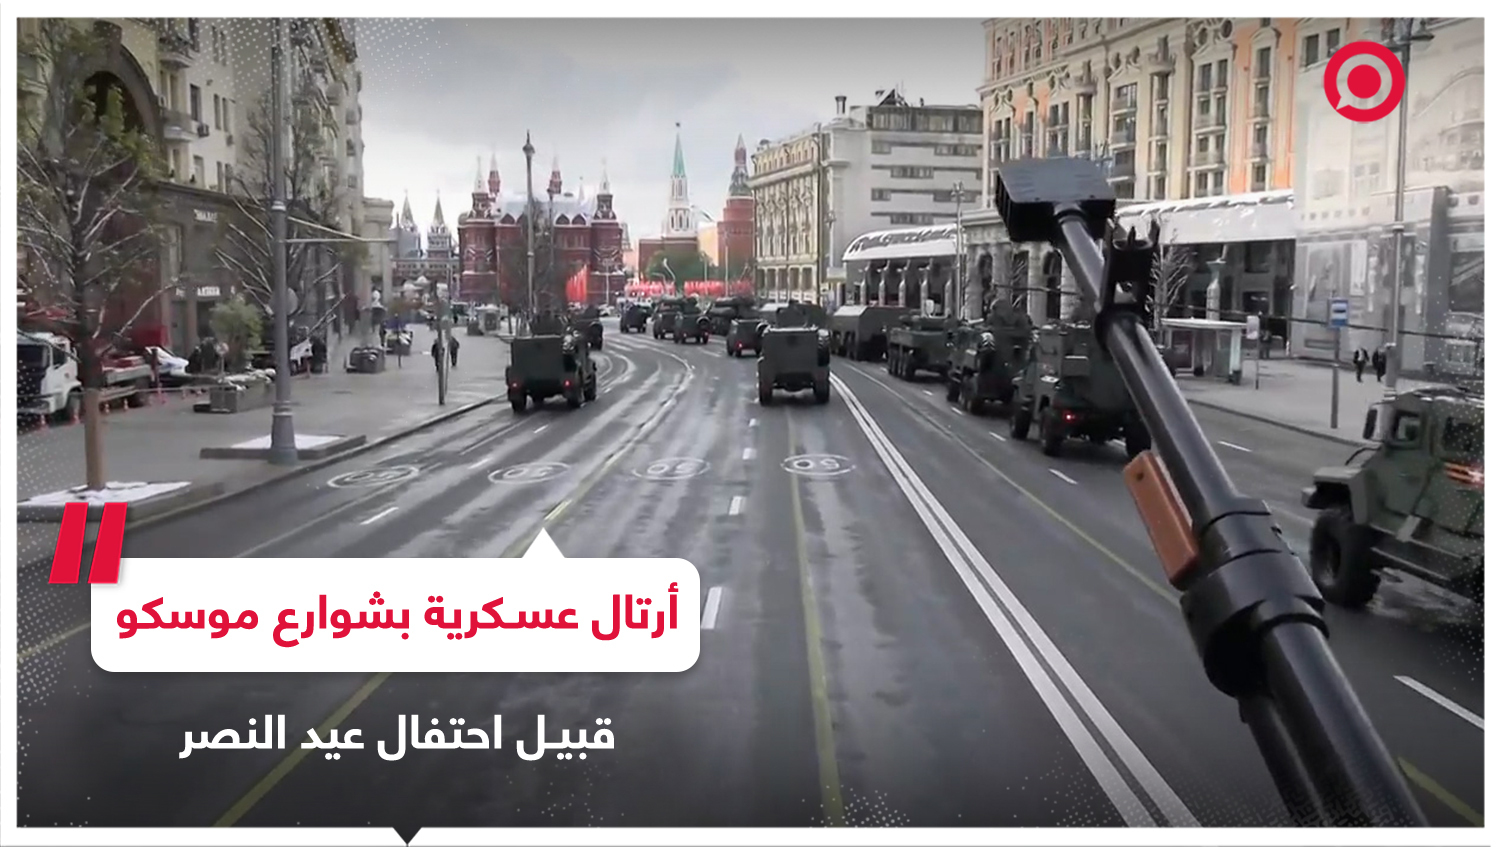 أرتال من الآليات العسكرية تجوب شوارع موسكو قبل استعراض عيد النصر